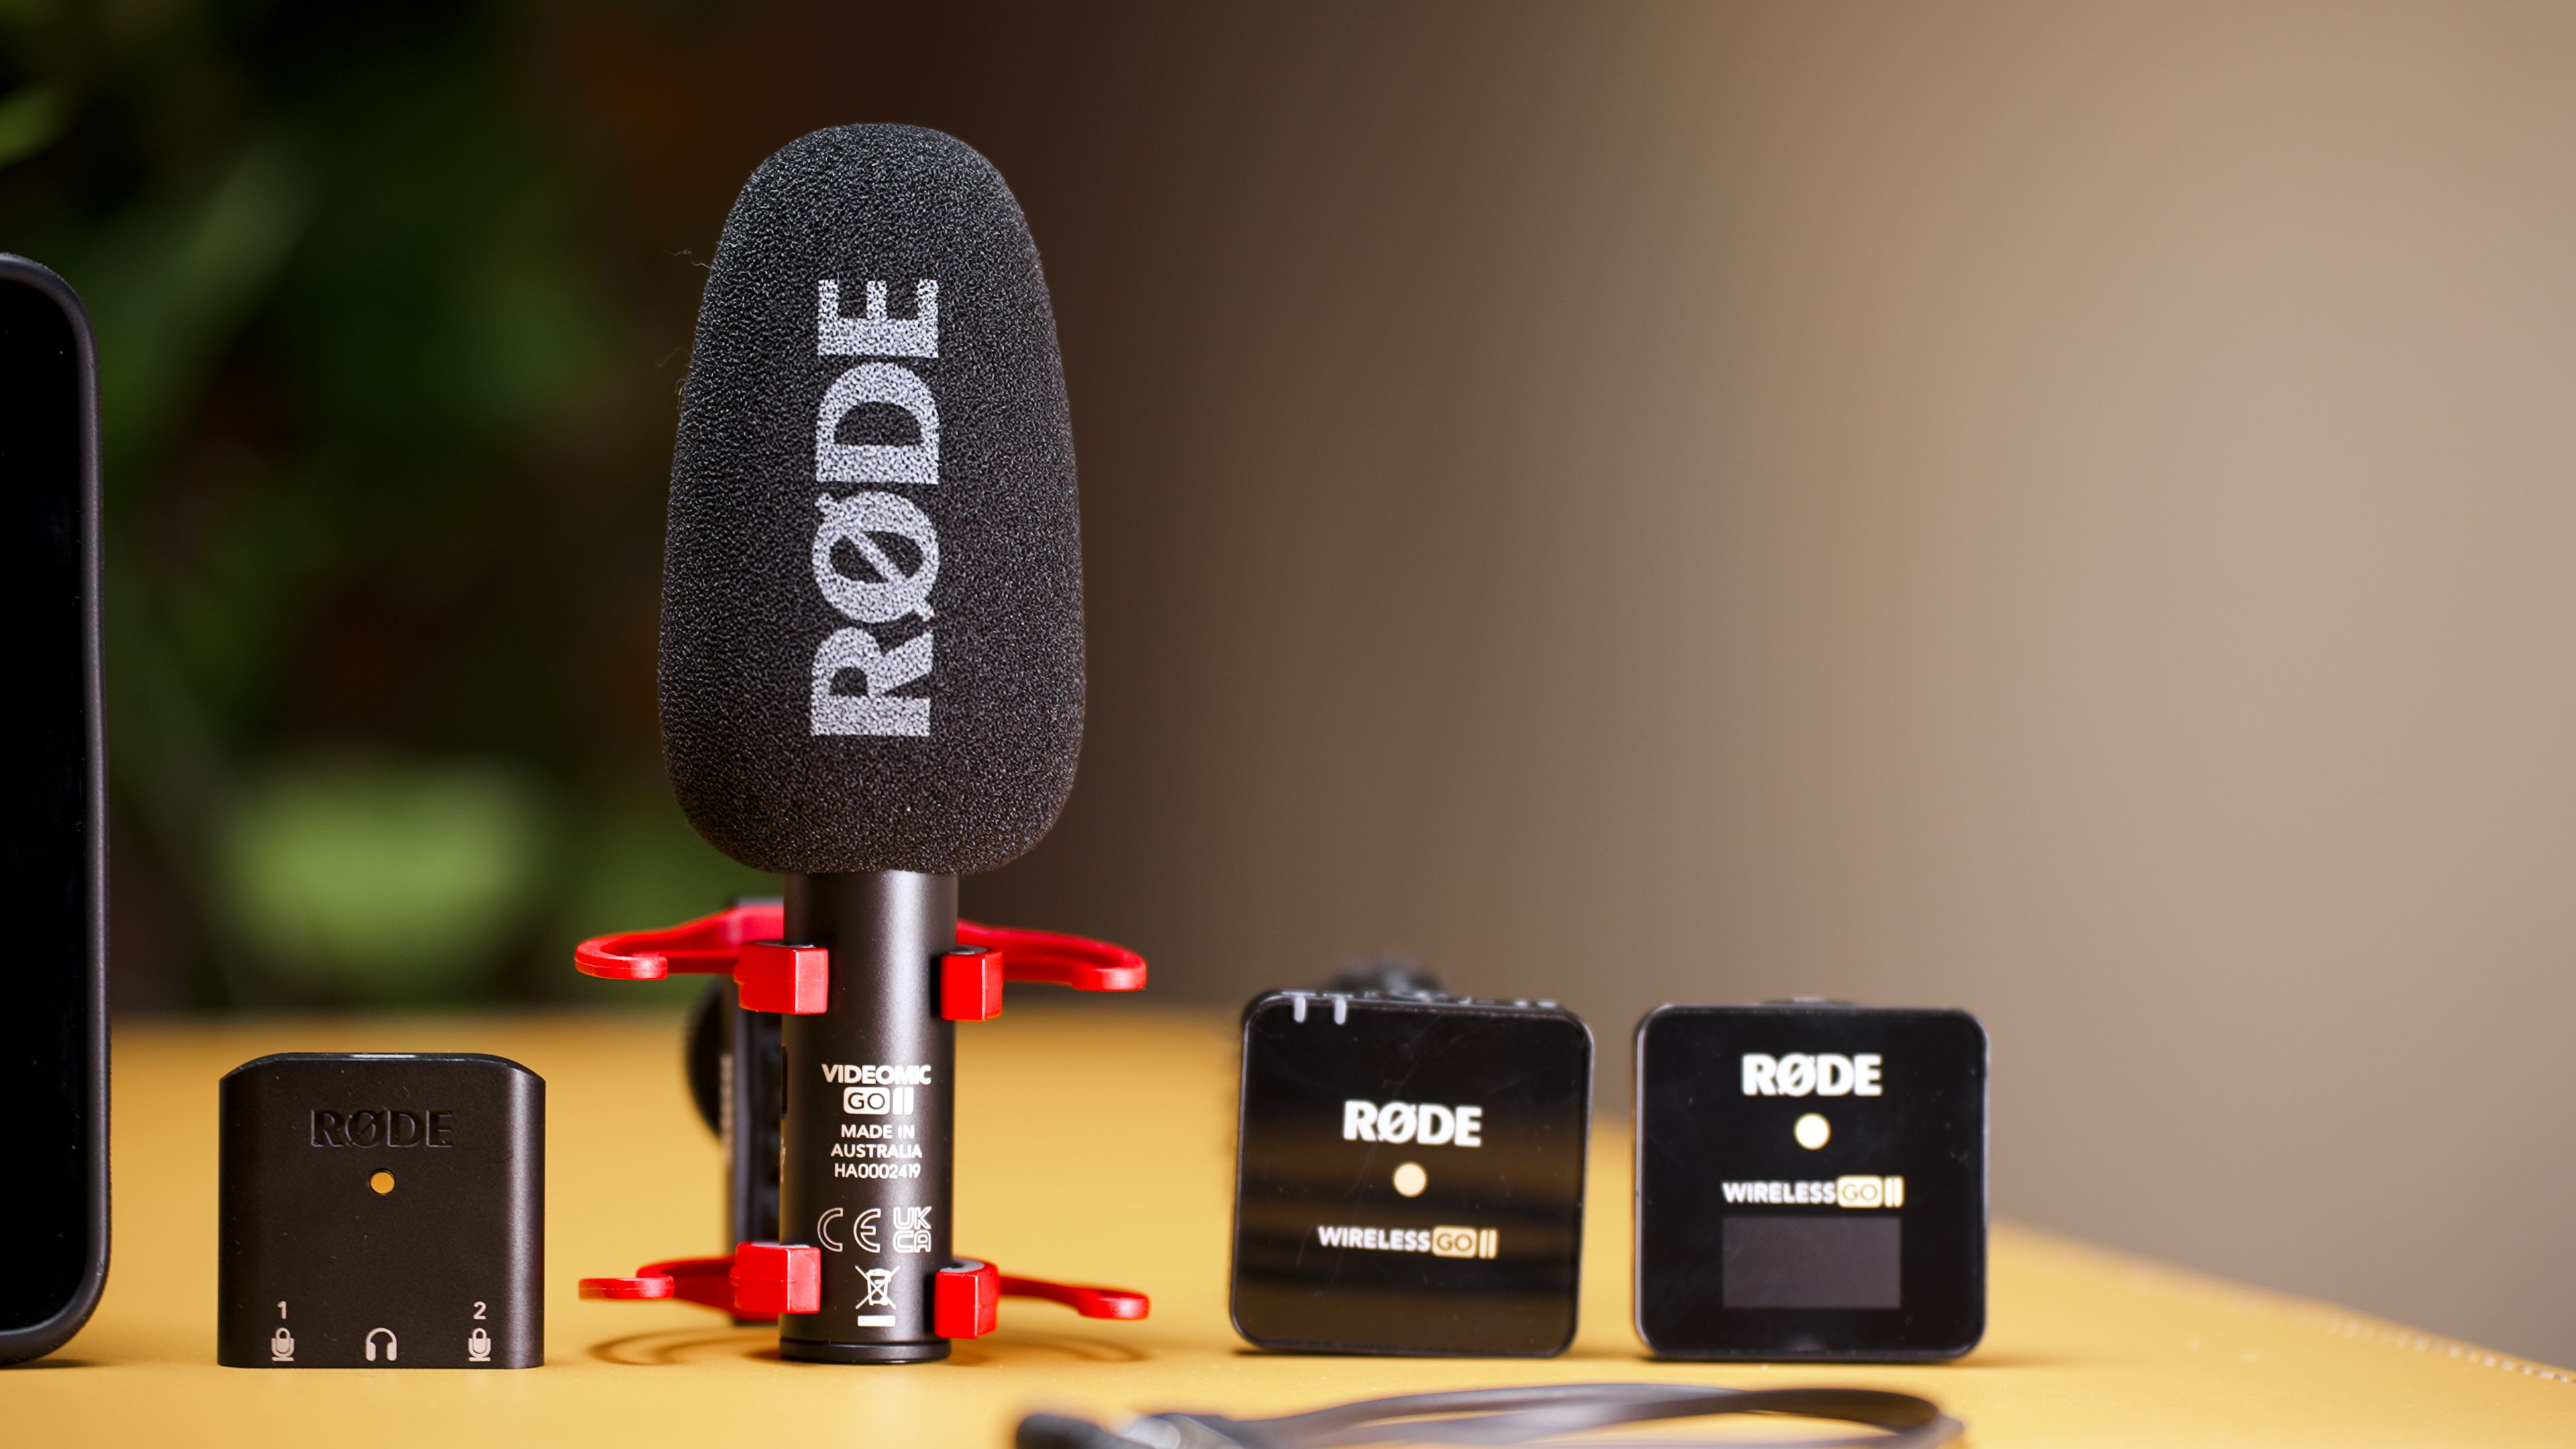 RODE Wireless GO 2 -SUPER micrófono R- 